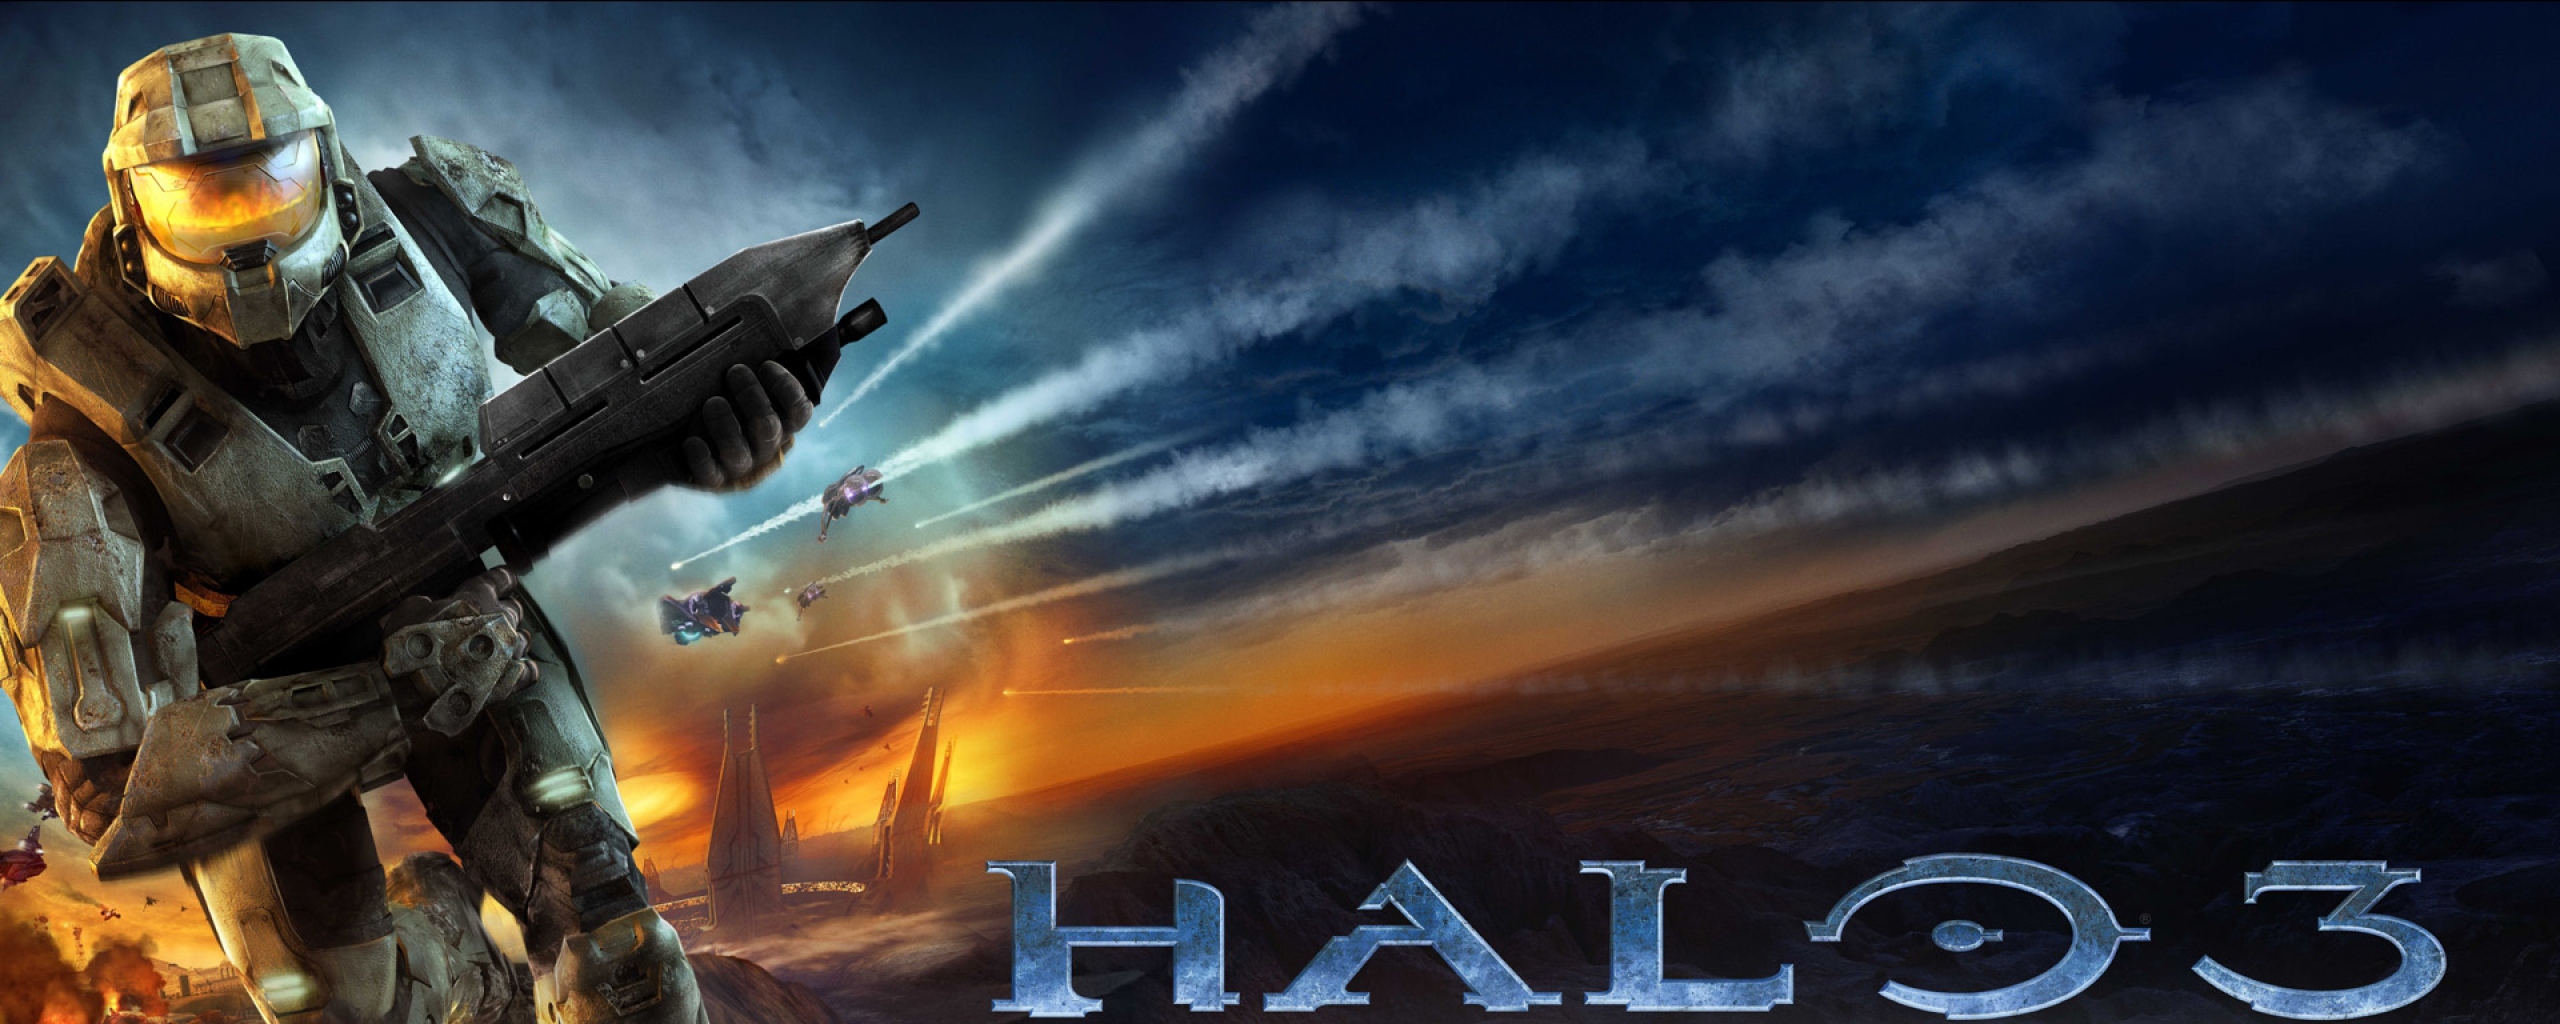 Halo Dual Screen Wallpaper - Photos